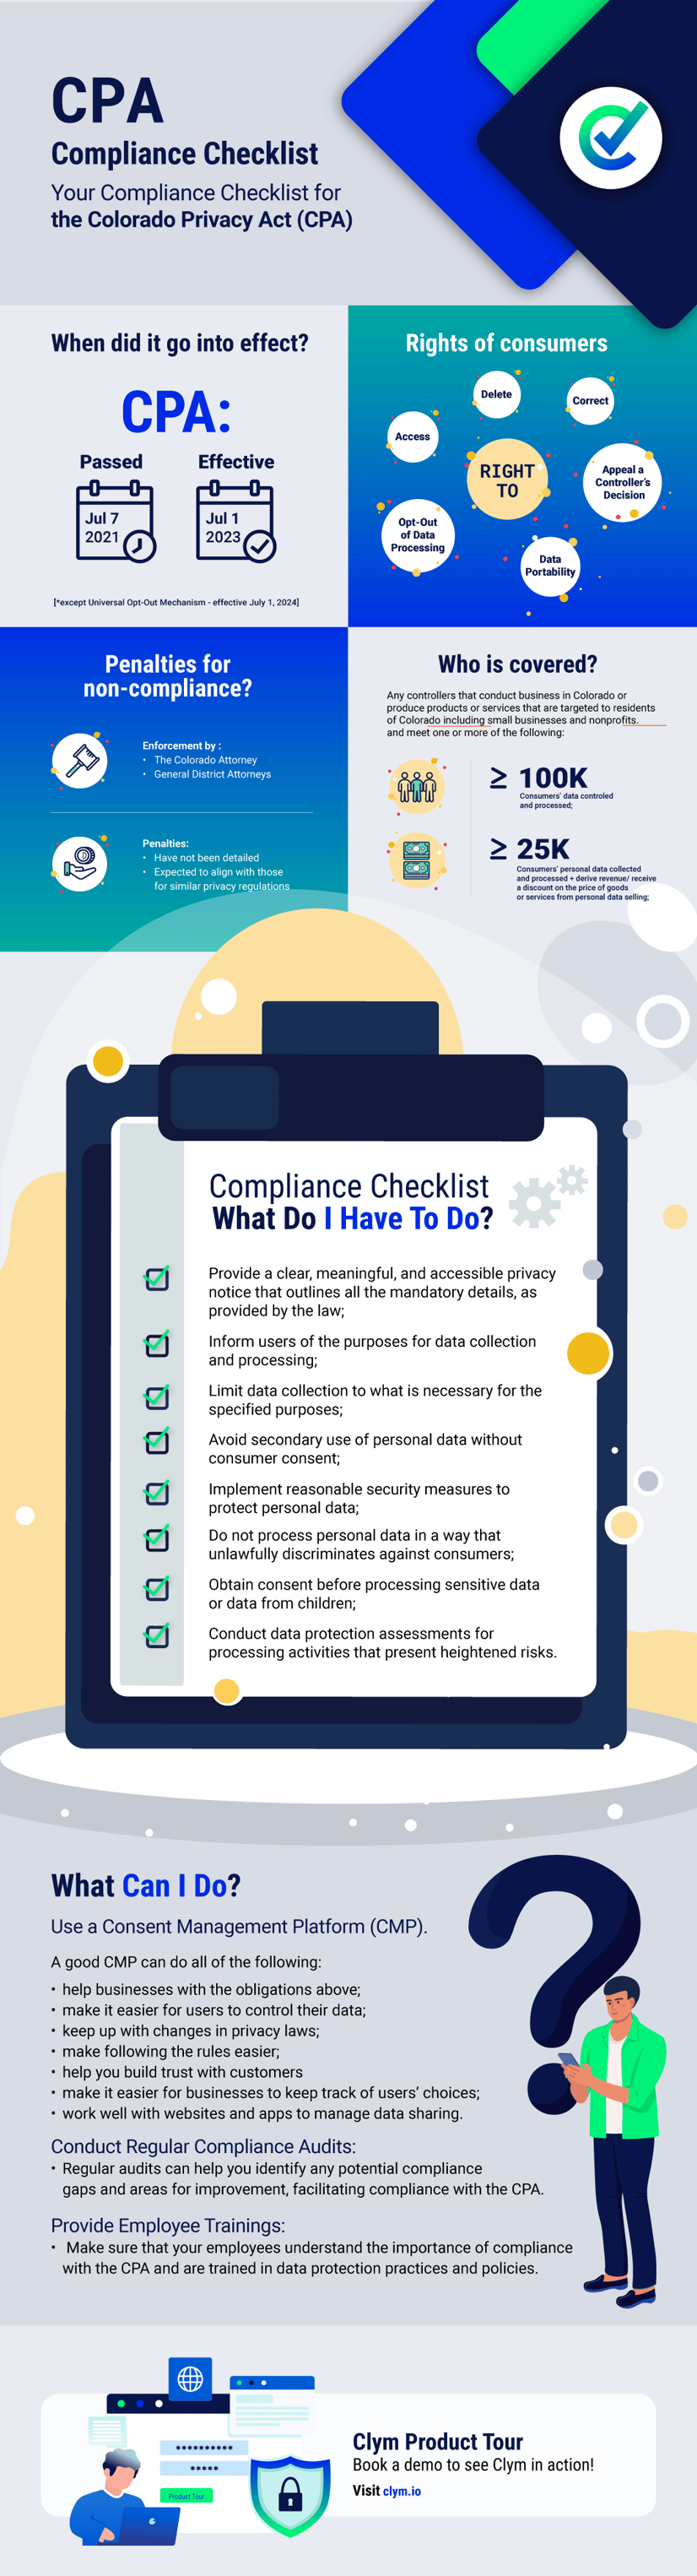 Colorado-Privacy-Act-CPA-compliance-checklist